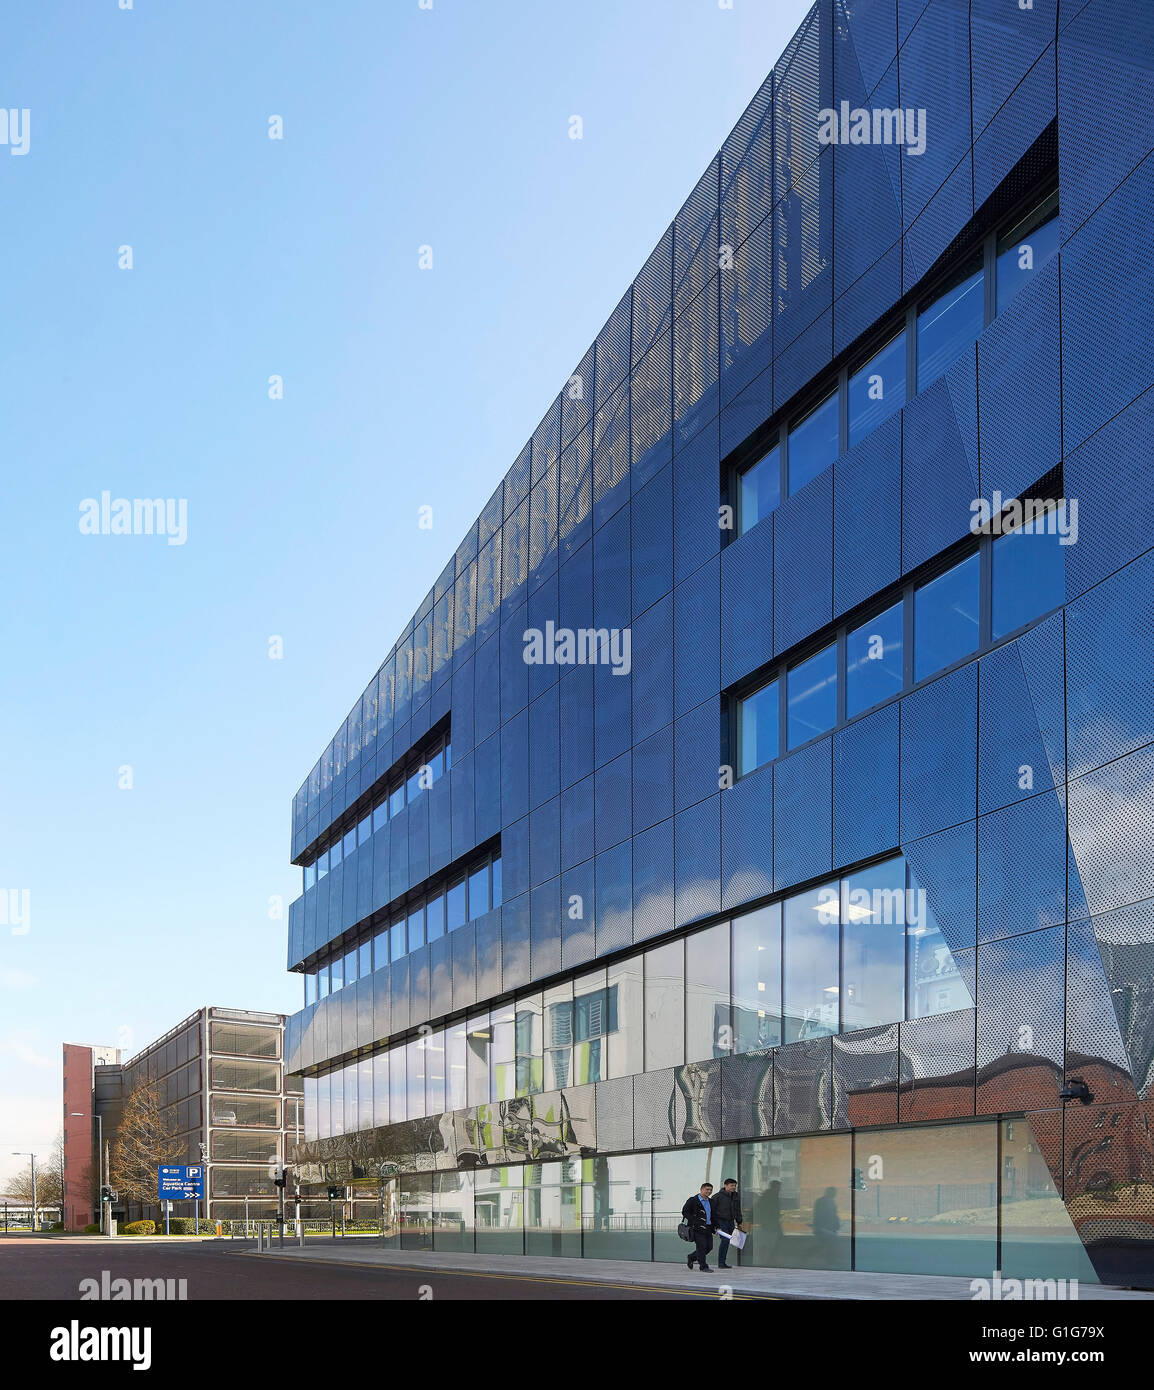 Perspektive der reflektierenden Außenfassade. Graphen-Institut, Universität von Manchester, Manchester, Vereinigtes Königreich. Architekt: Stockfoto